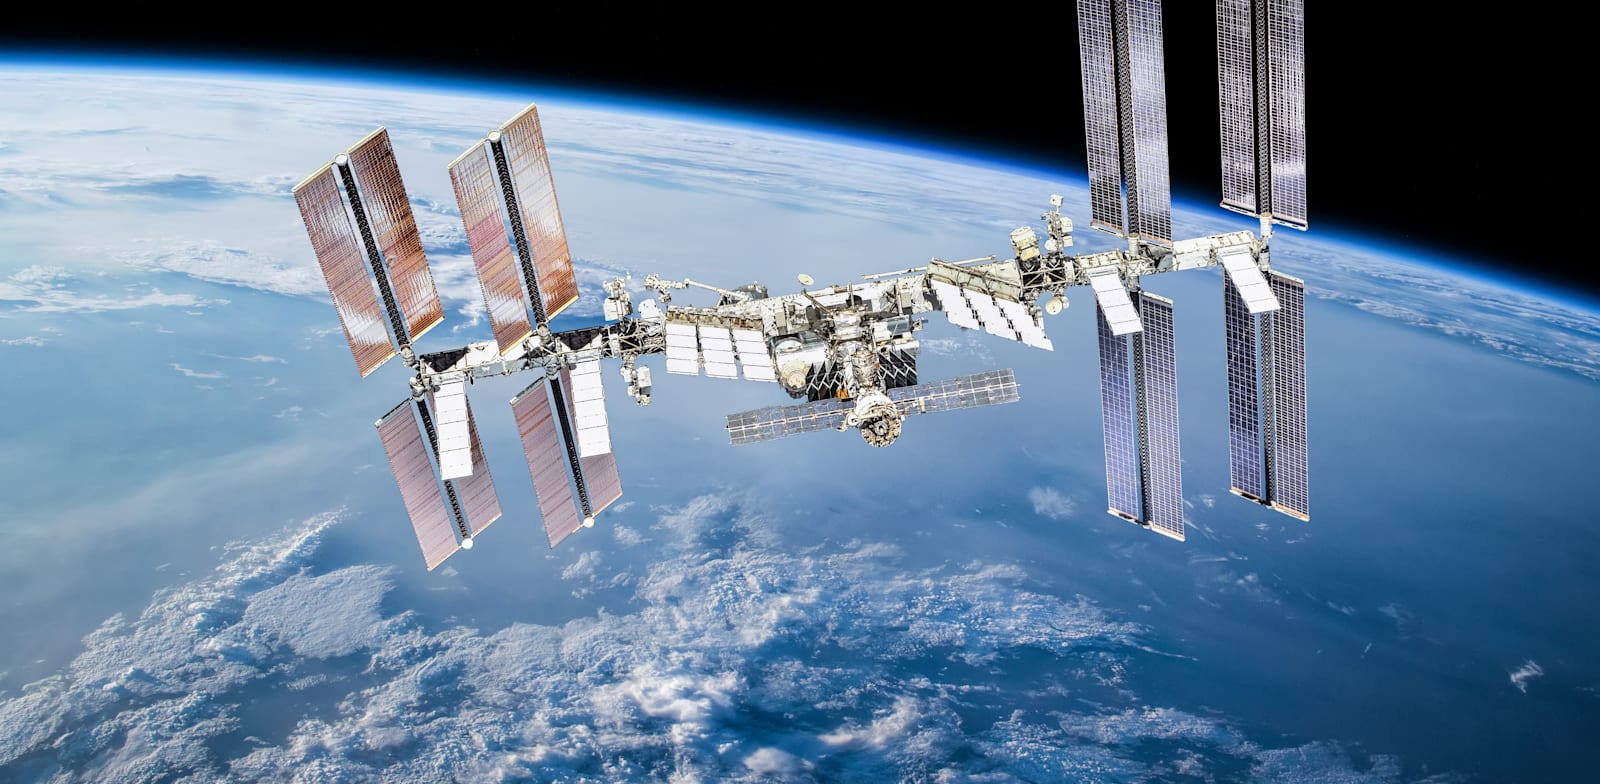 תחנת החלל הבינלאומית. לרוסיה היכולת לקבוע את מסלולה / צילום: Shutterstock, Dima Zel